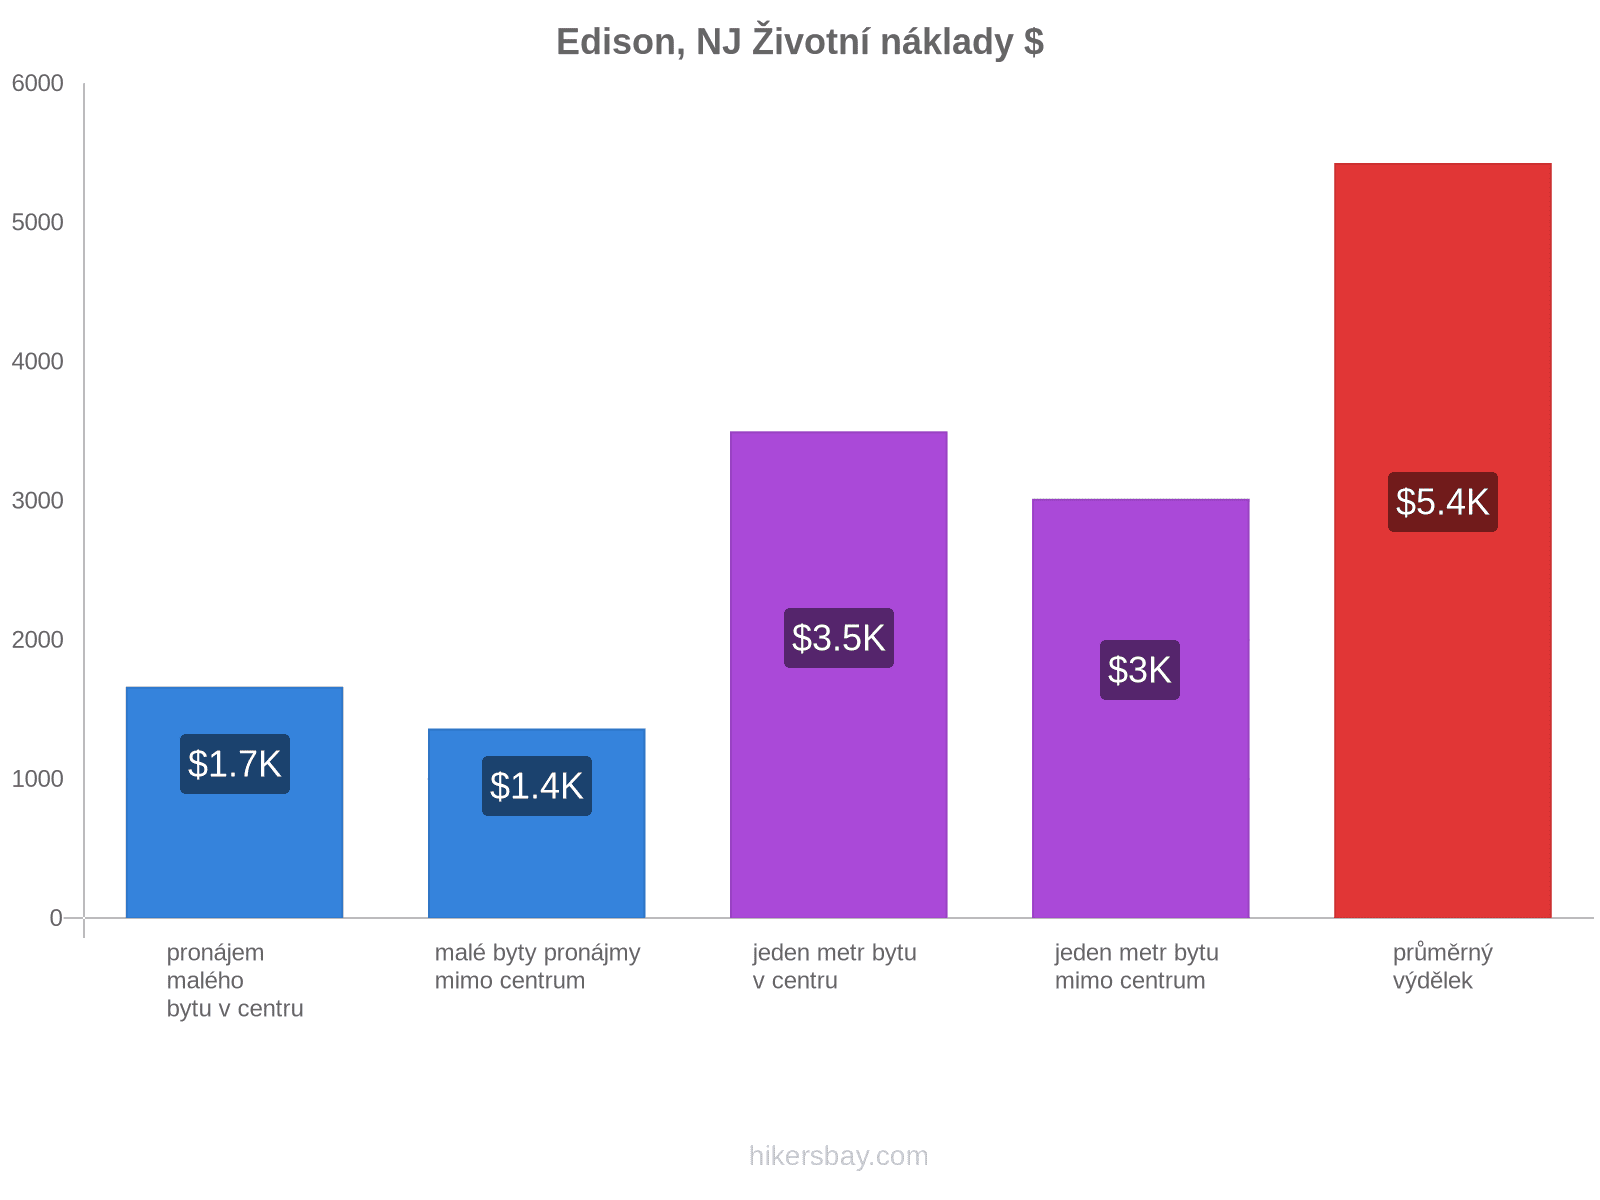 Edison, NJ životní náklady hikersbay.com